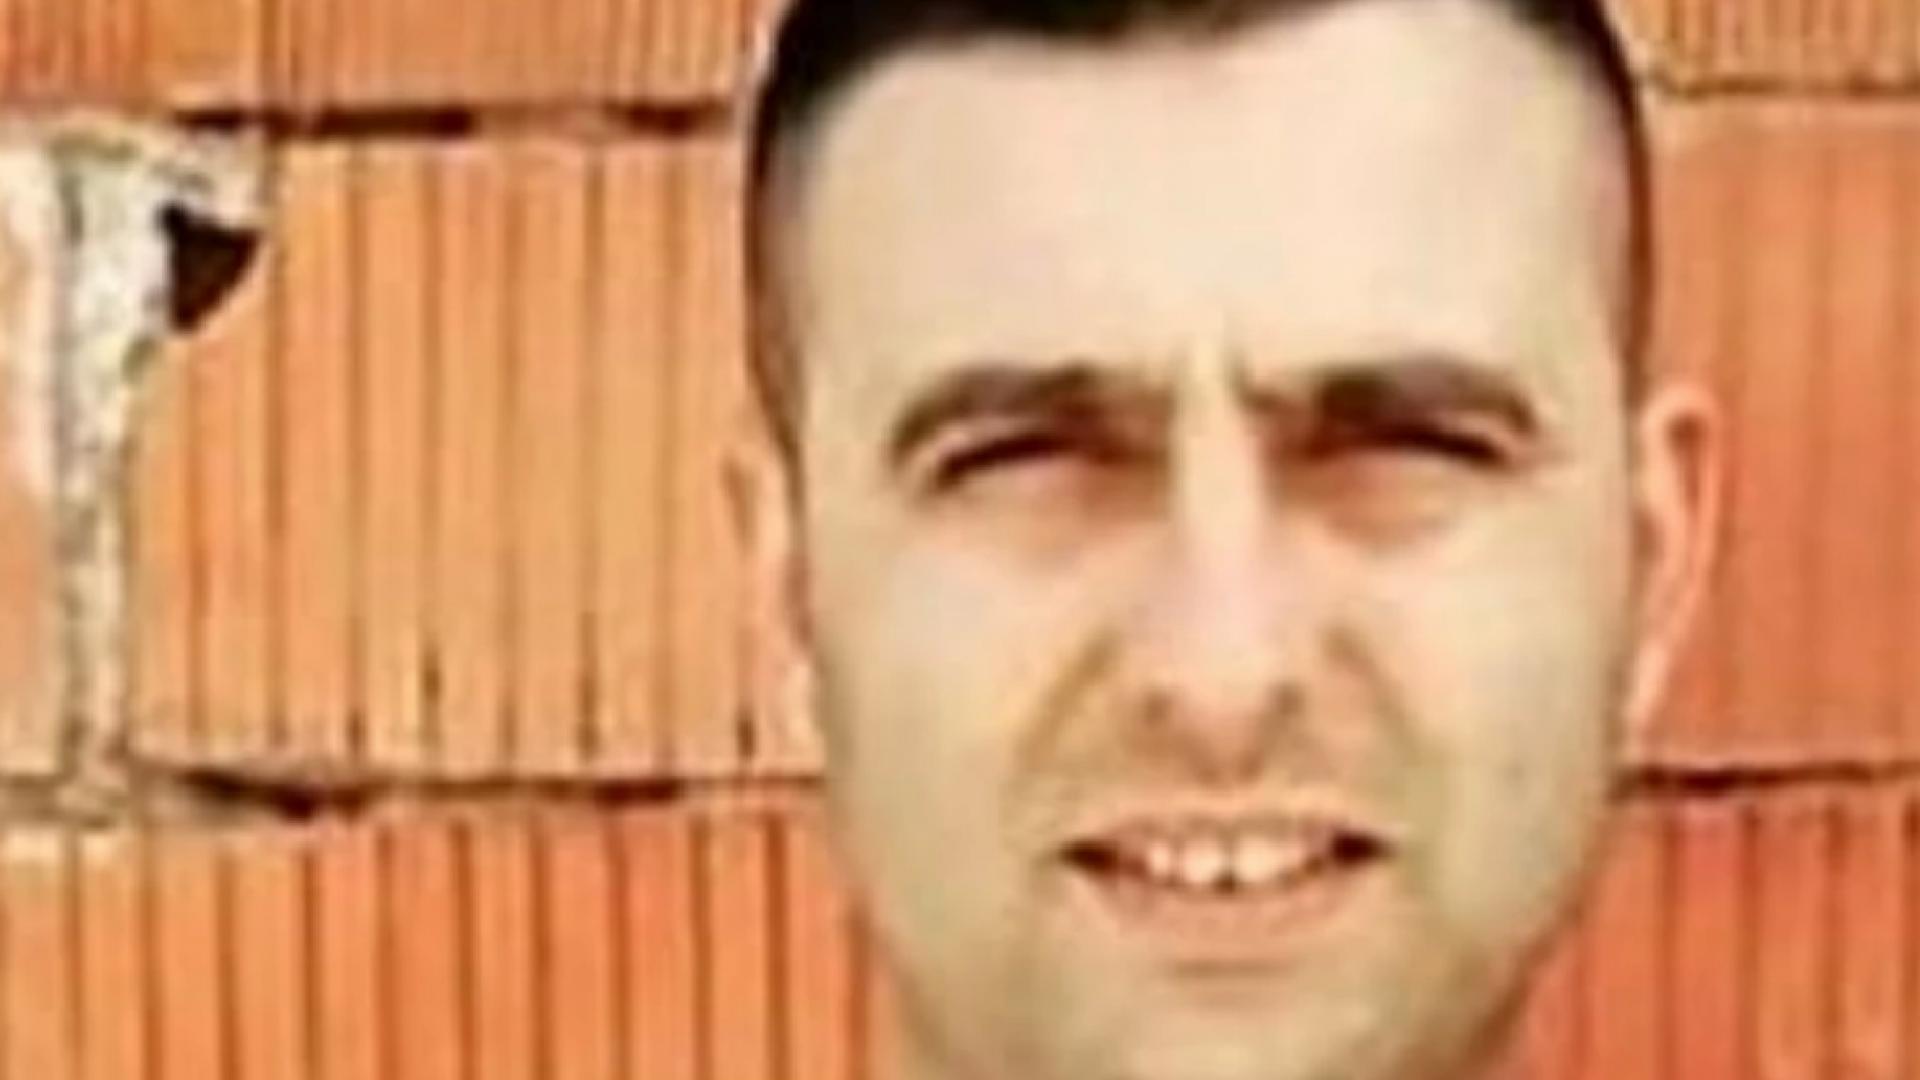 Bergama'da iş cinayeti: Mustafa Armanarlı çatıdan düşerek hayatını kaybetti